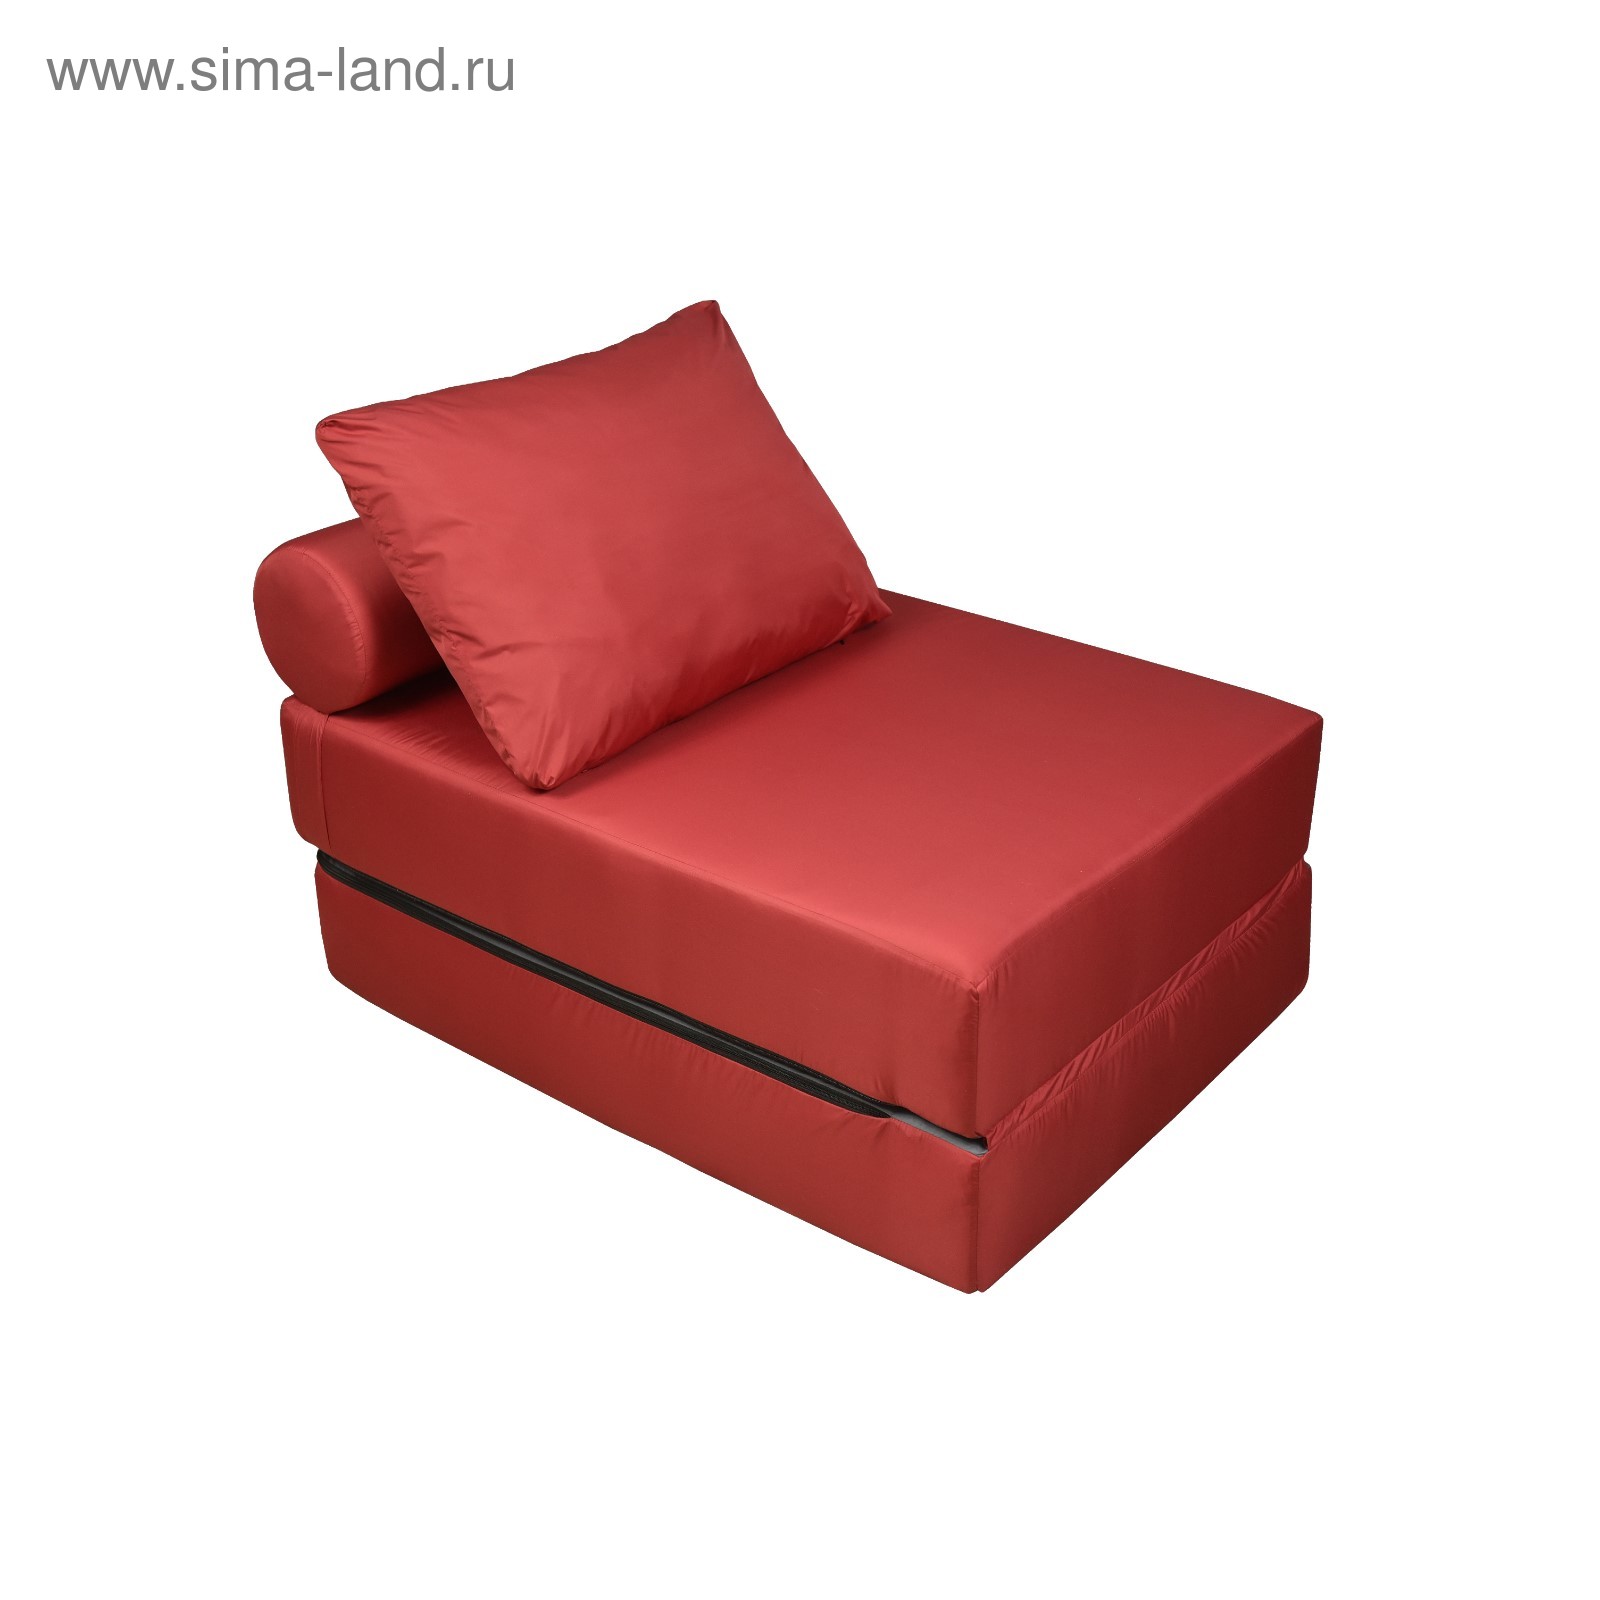 Кресло кровать Инмайрум